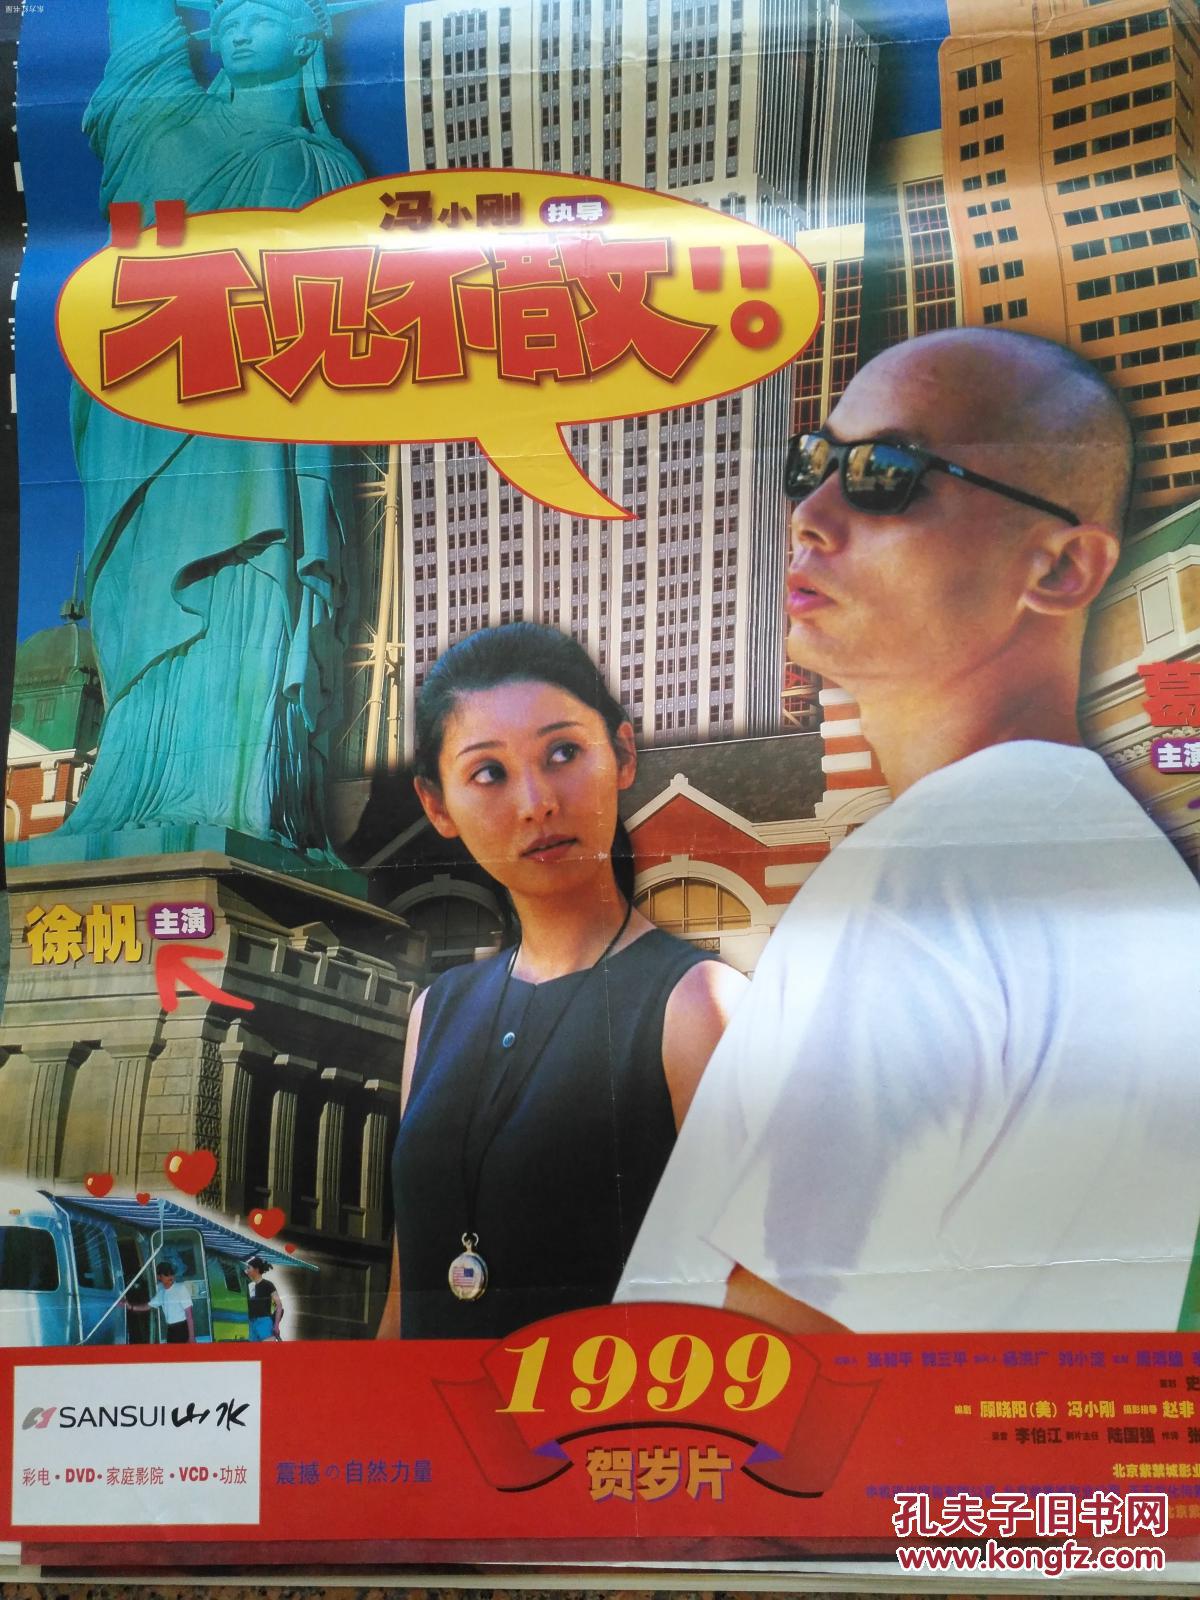 【图】获奖海报宣传画40--不见不散,1999年贺